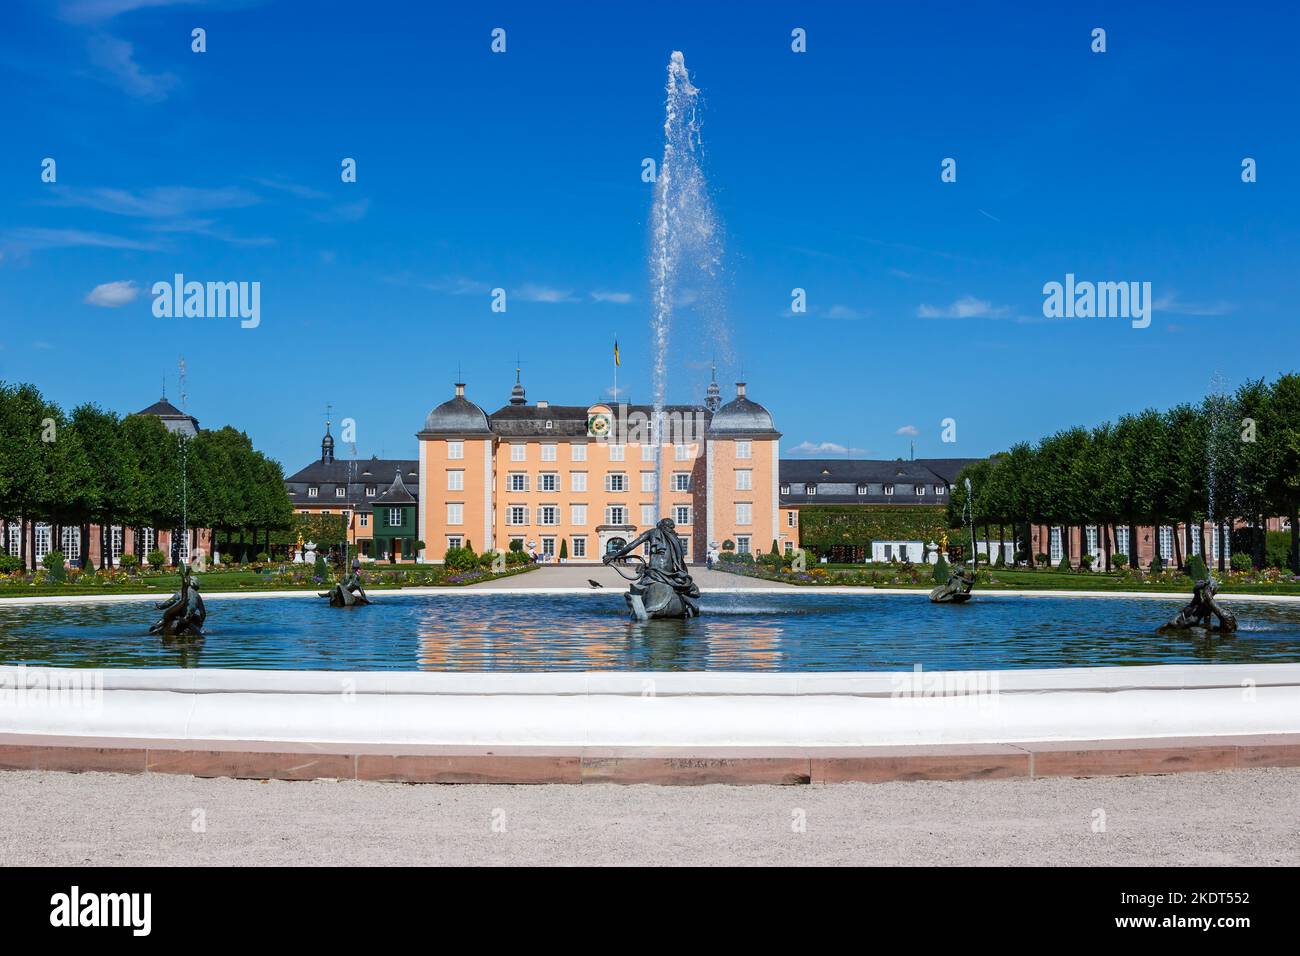 Schwetzingen, Germany - July 12, 2022: Schwetzingen Palace With Fountain In Palace Garden Park Travel Architecture In Schwetzingen, Germany. Stock Photo